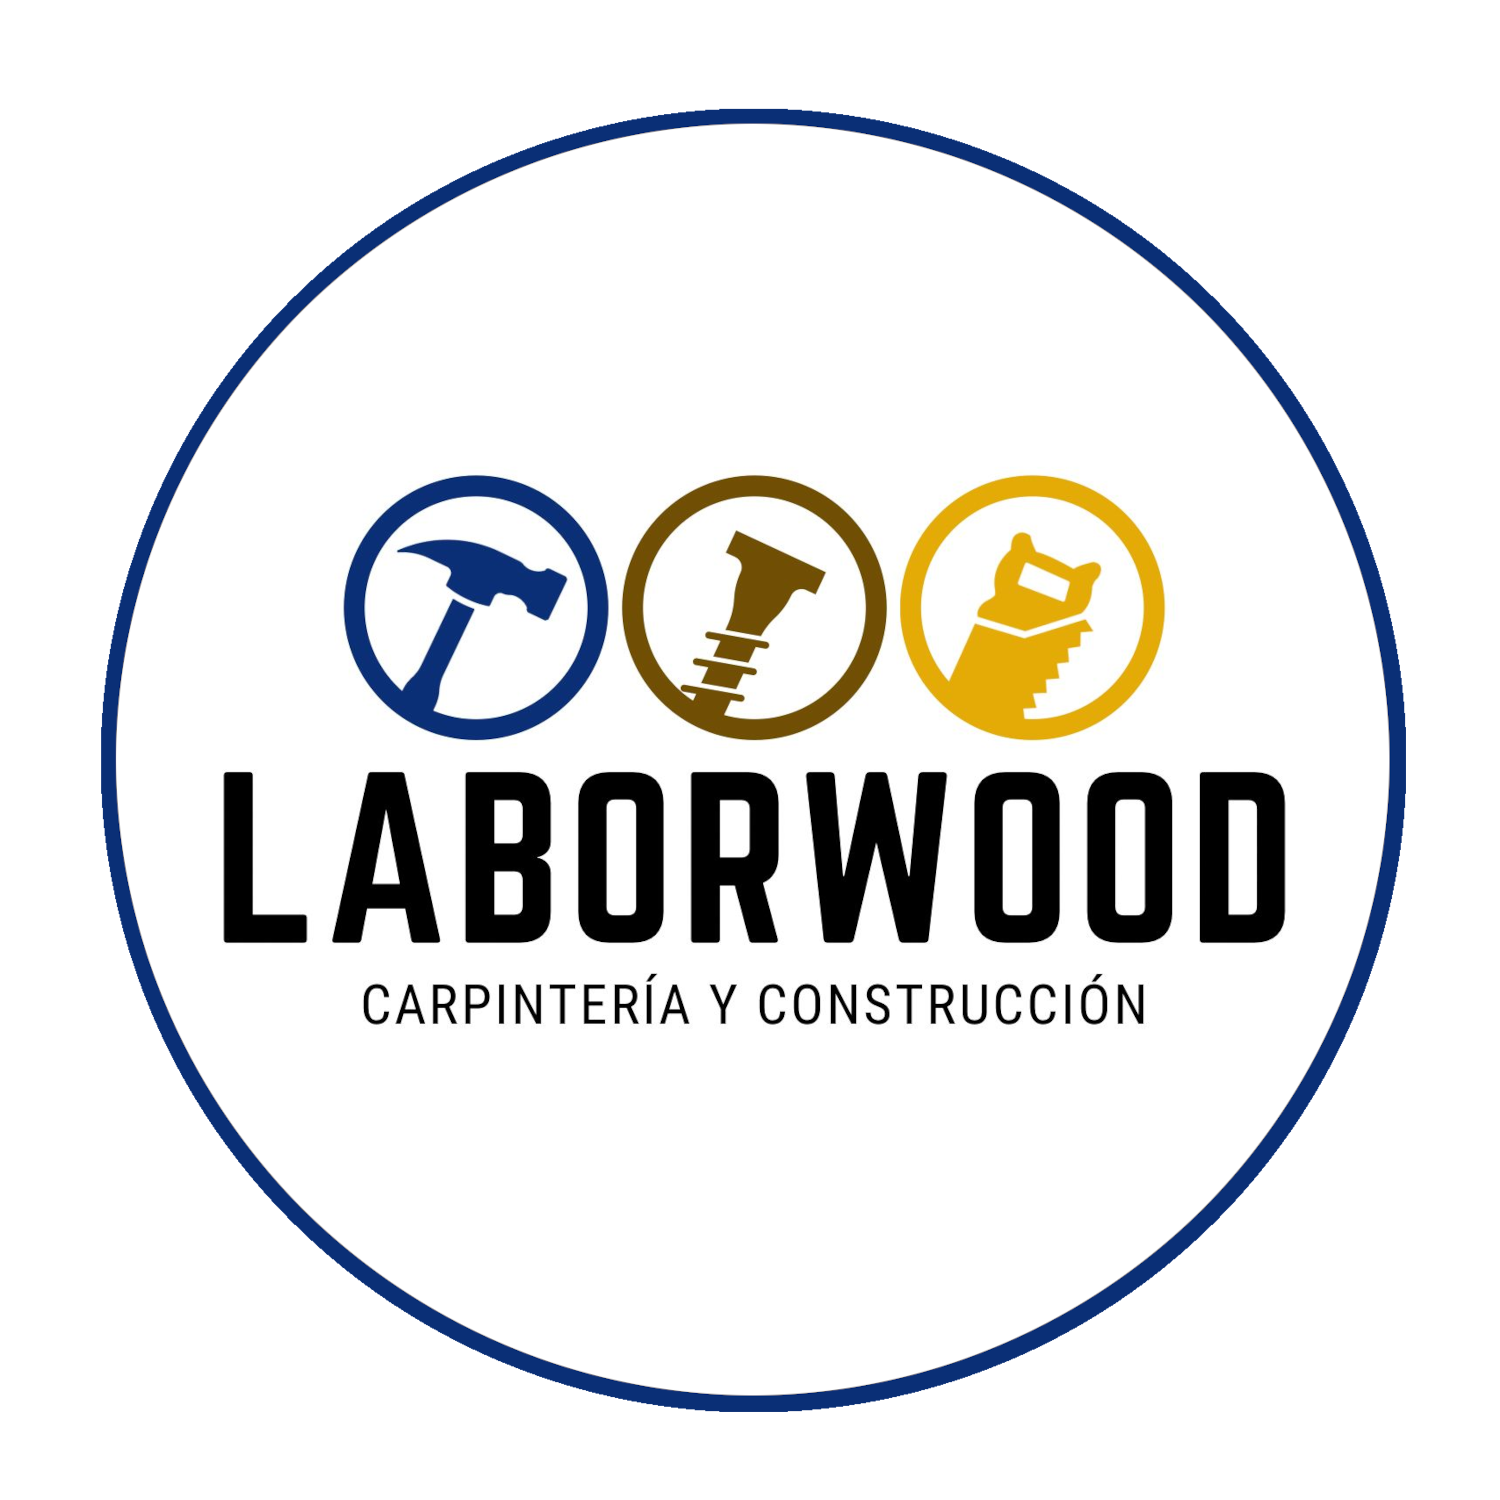 Laborwood, carpintería y construcción